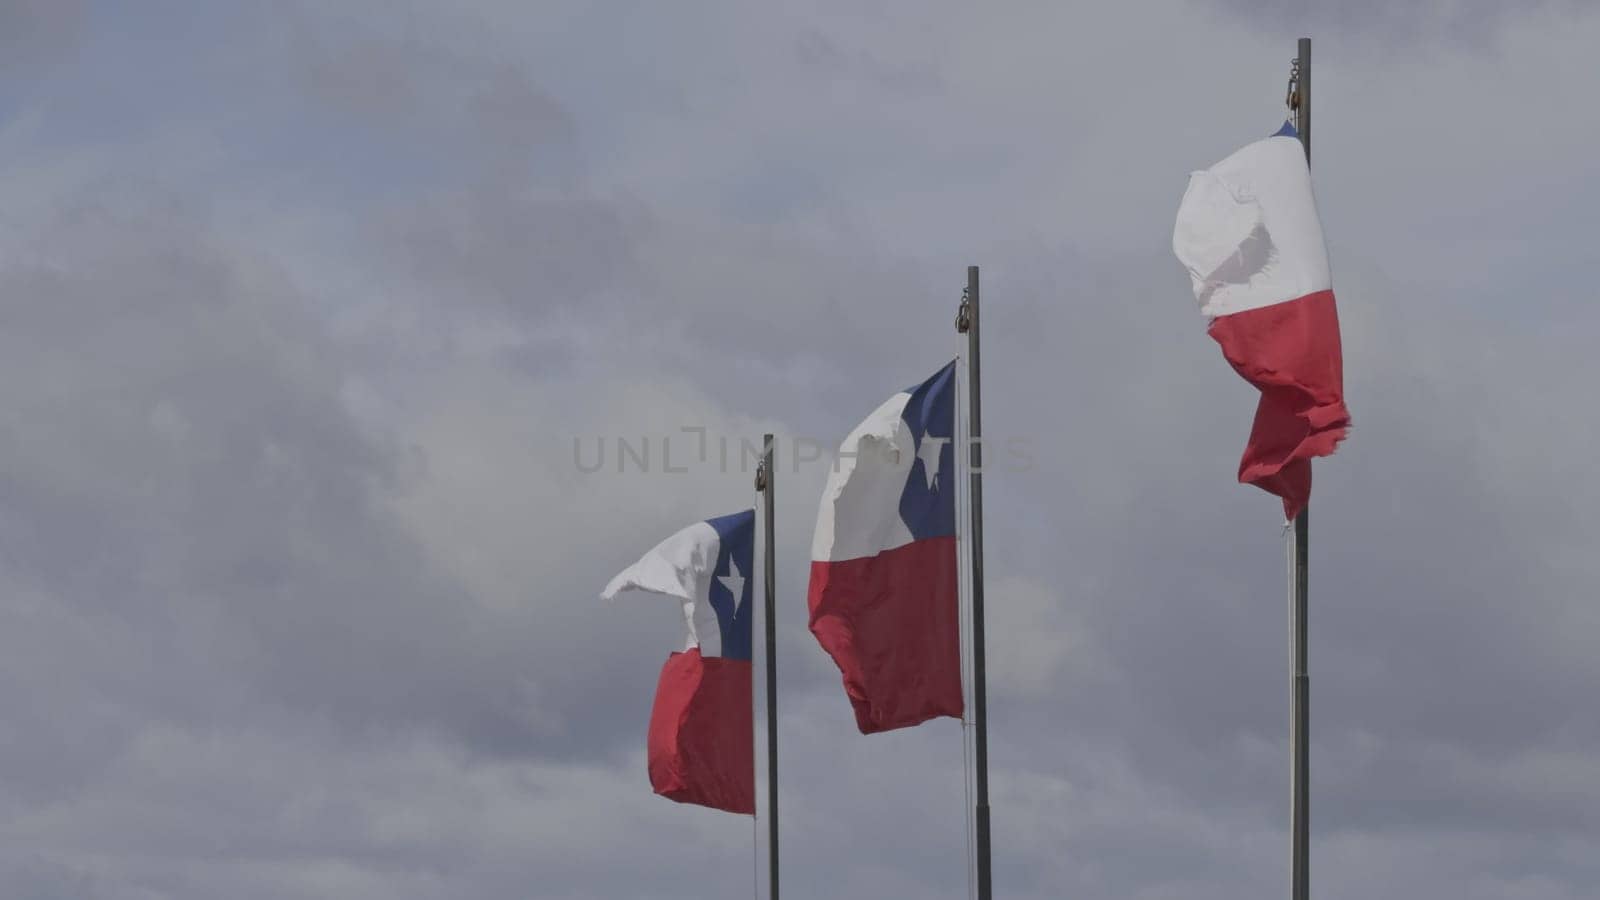 Three Chilean Flags Waving Slowly Against Blue Sky by FerradalFCG